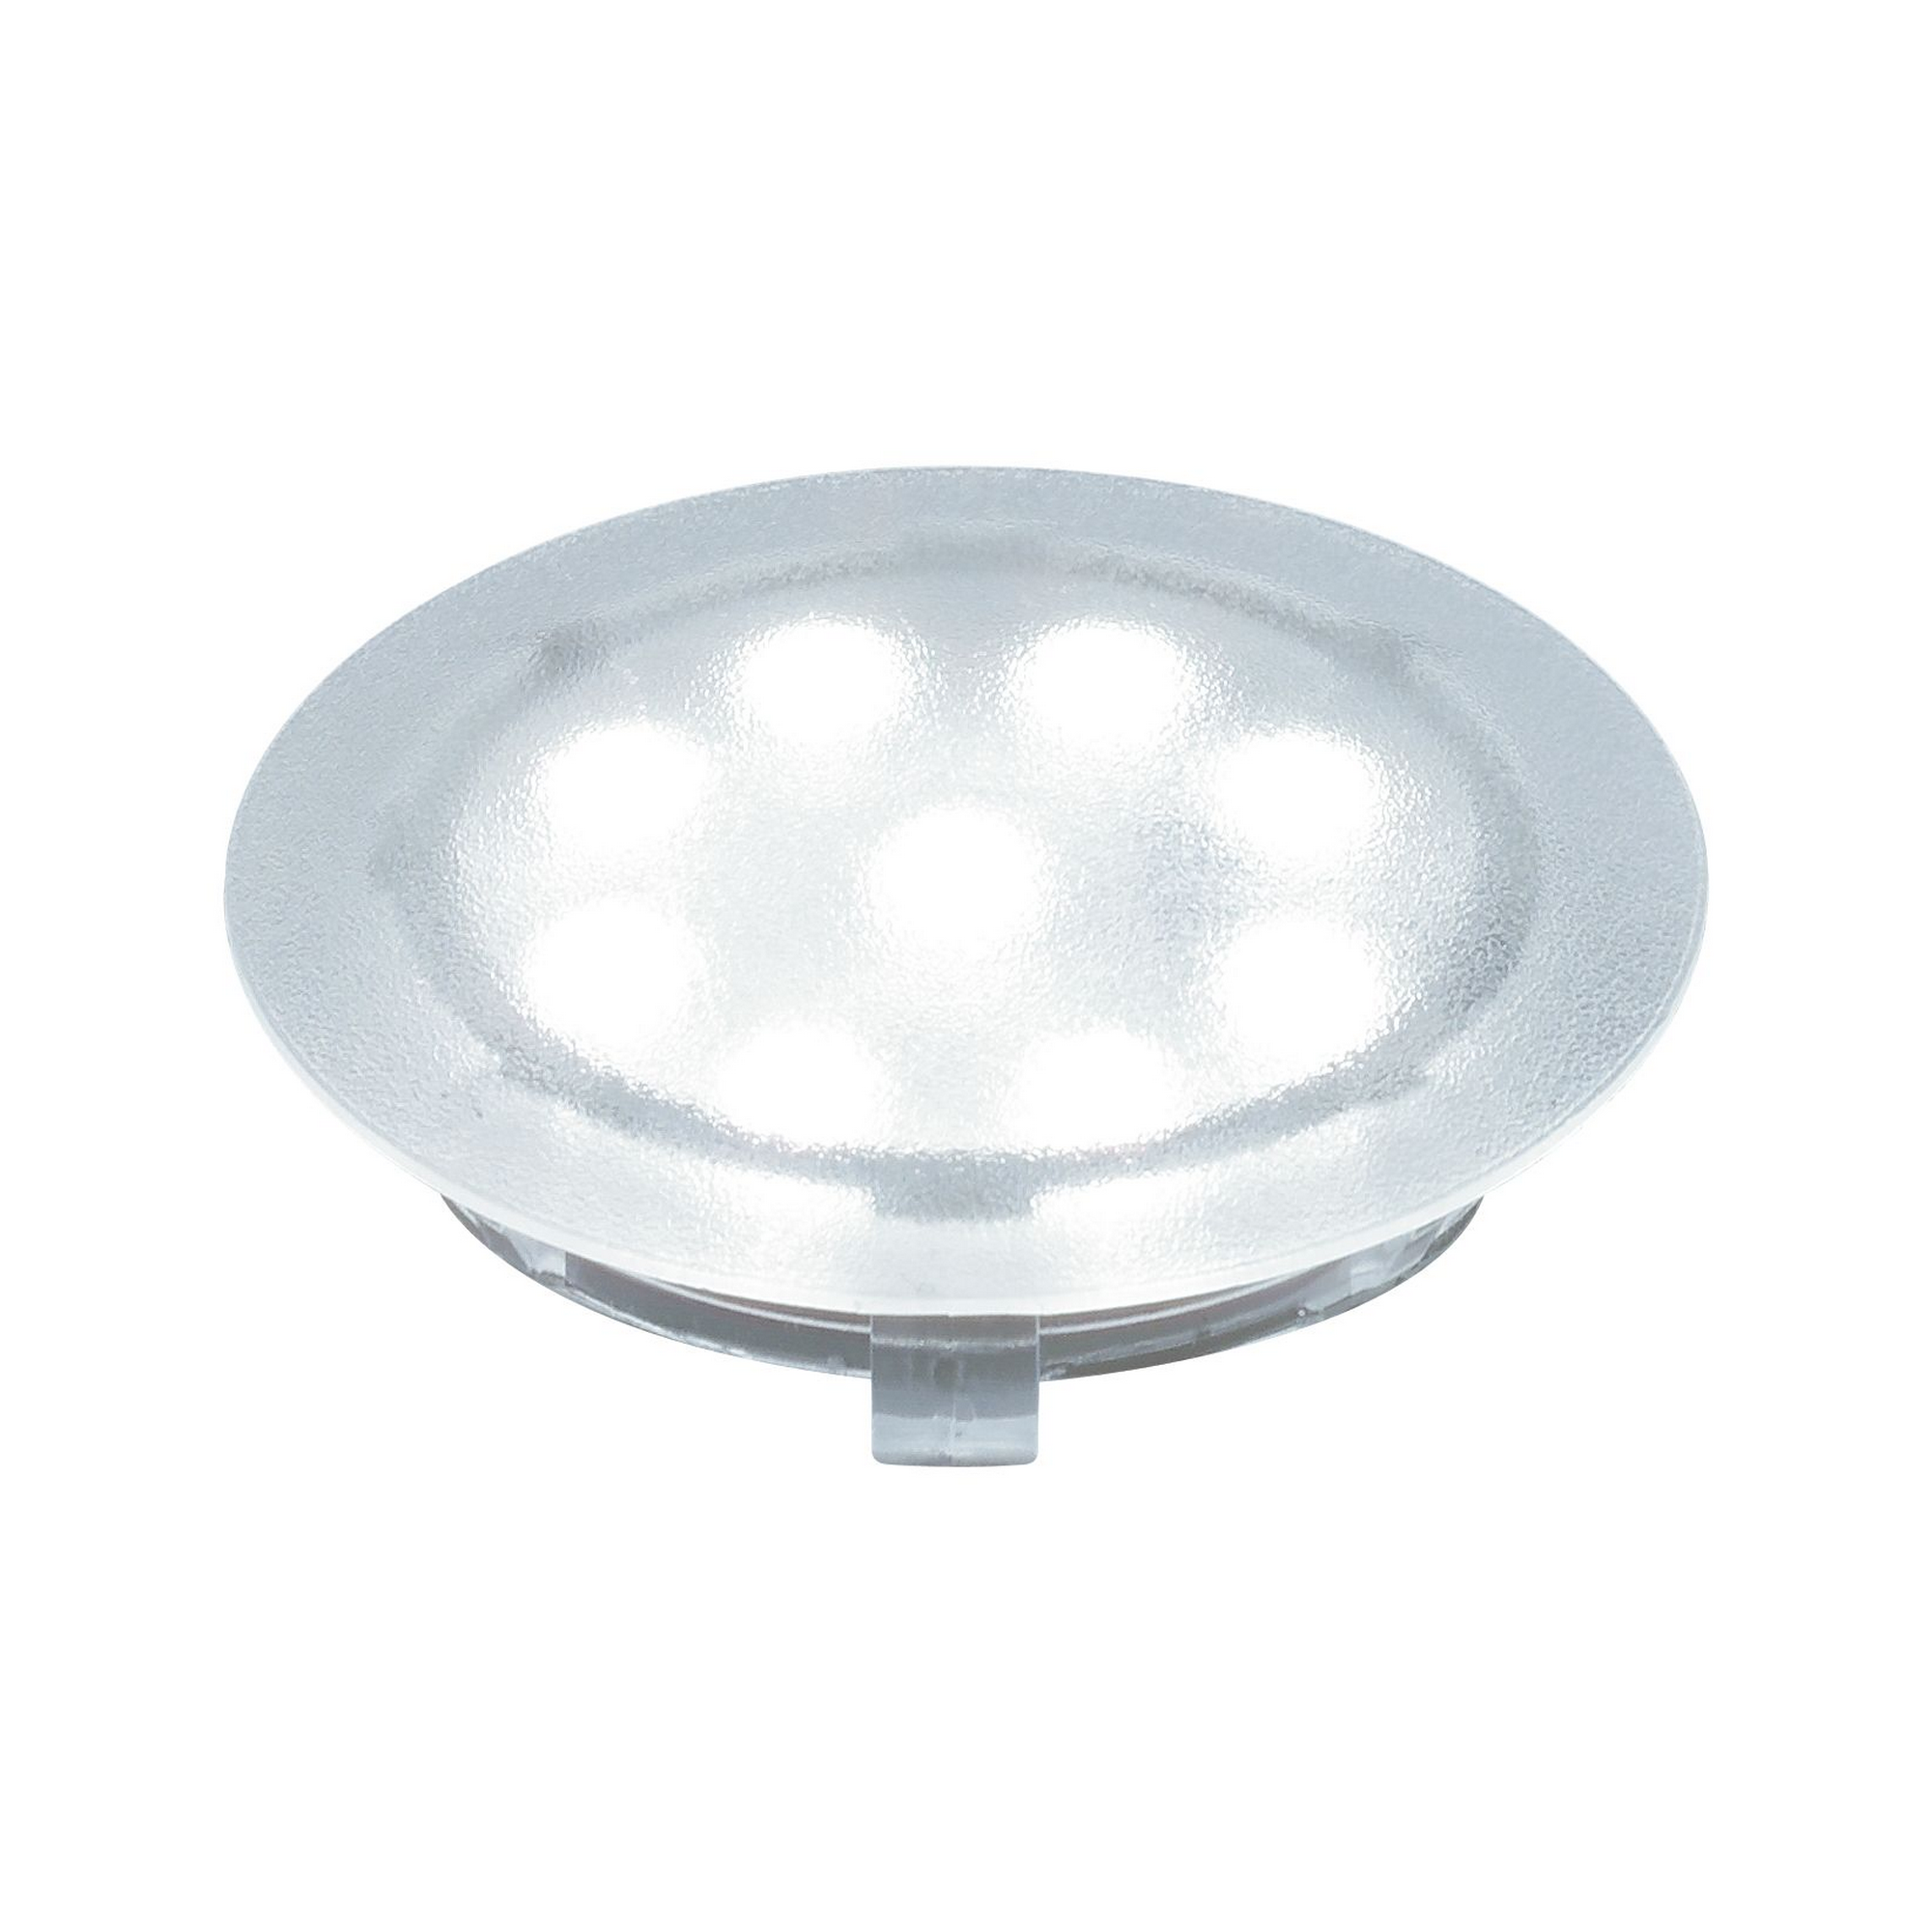 LED-Einbauleuchte 'UpDownlight' Ø 45 mm 6500 K tageslichtweiß 1 W transparent, 1 Stück + product picture